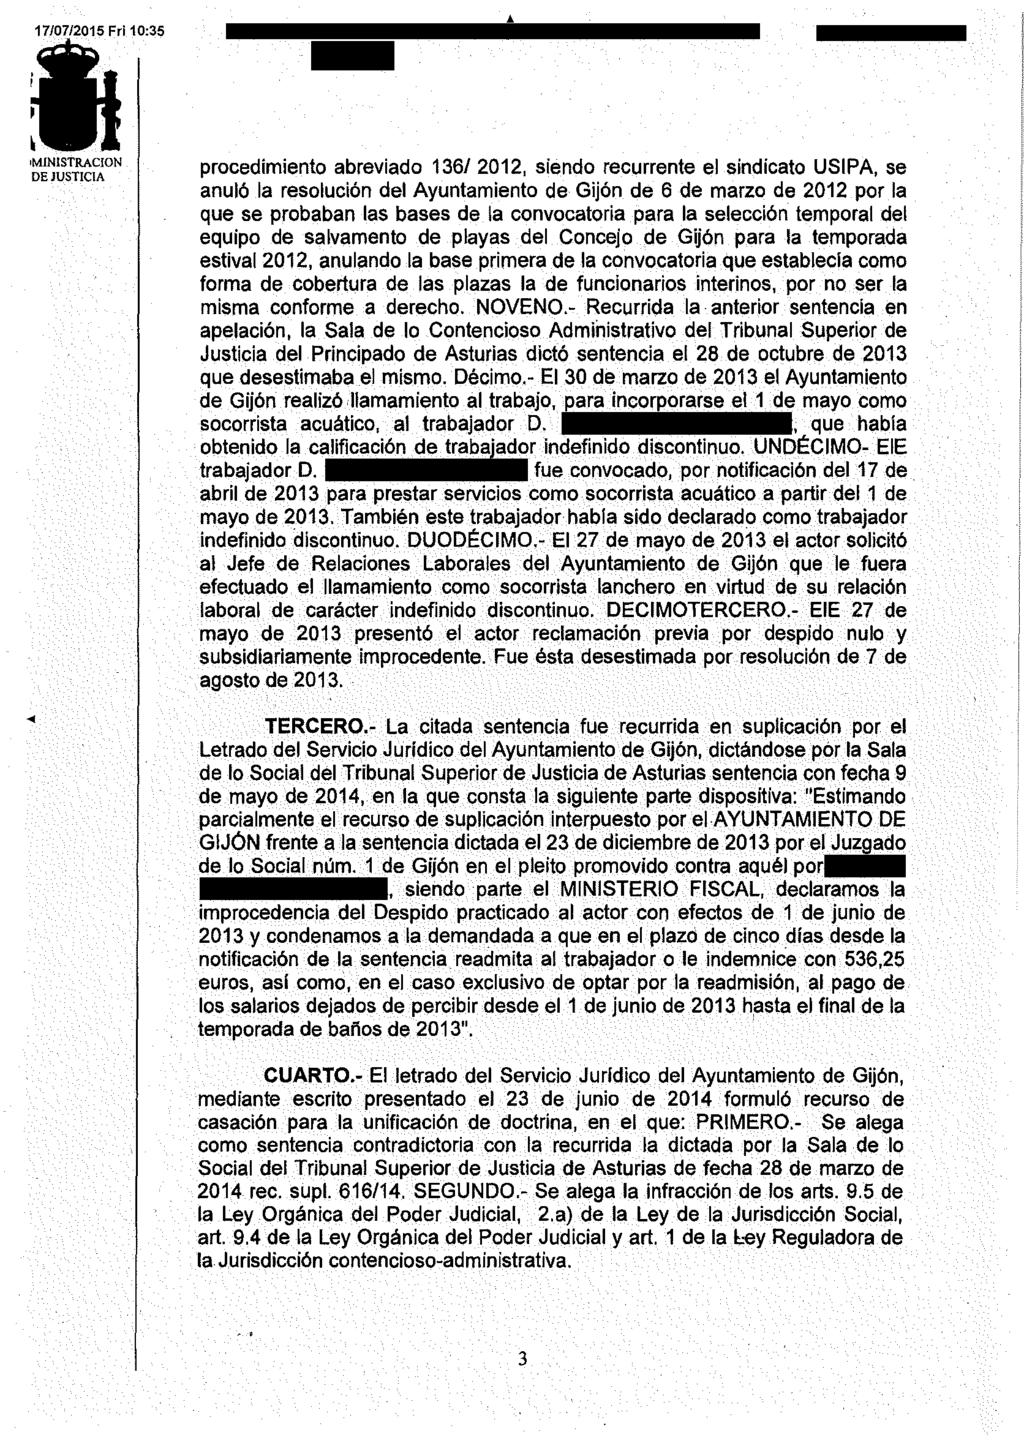 ~ 1MINISTRACION procedimiento abreviado 136/2012, siendo recurrente el sindicato USIPA, se anuló la resolución del Ayuntamiento de Gijón de 6 de marzo de 2012 por la que se probaban las bases de la